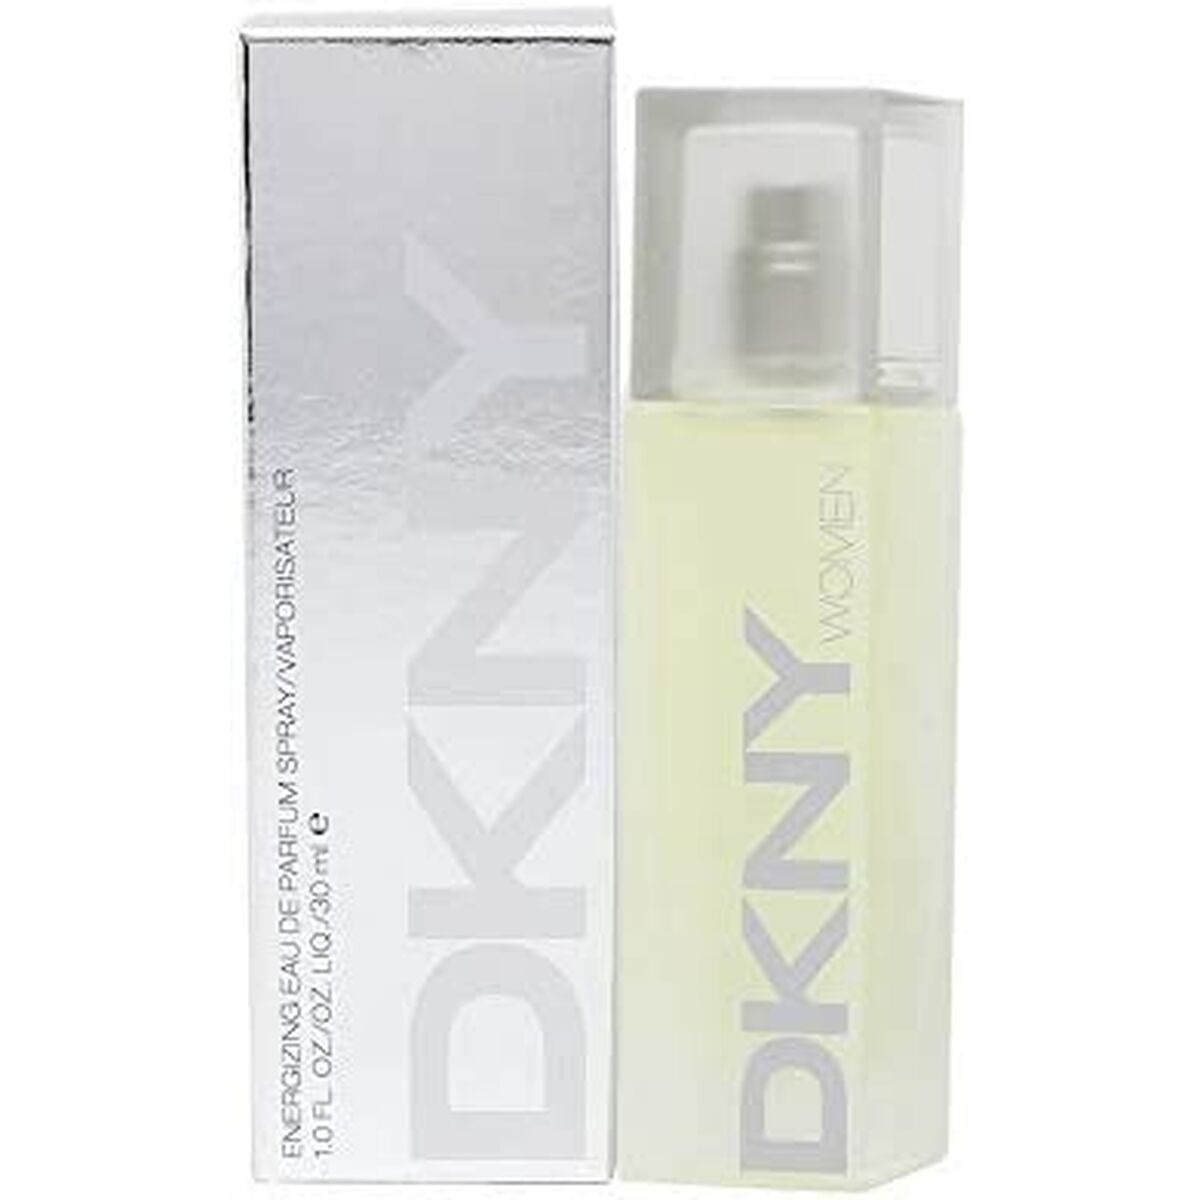 Ženski parfem dkny dnkdknf0103002 edp edp 30 ml